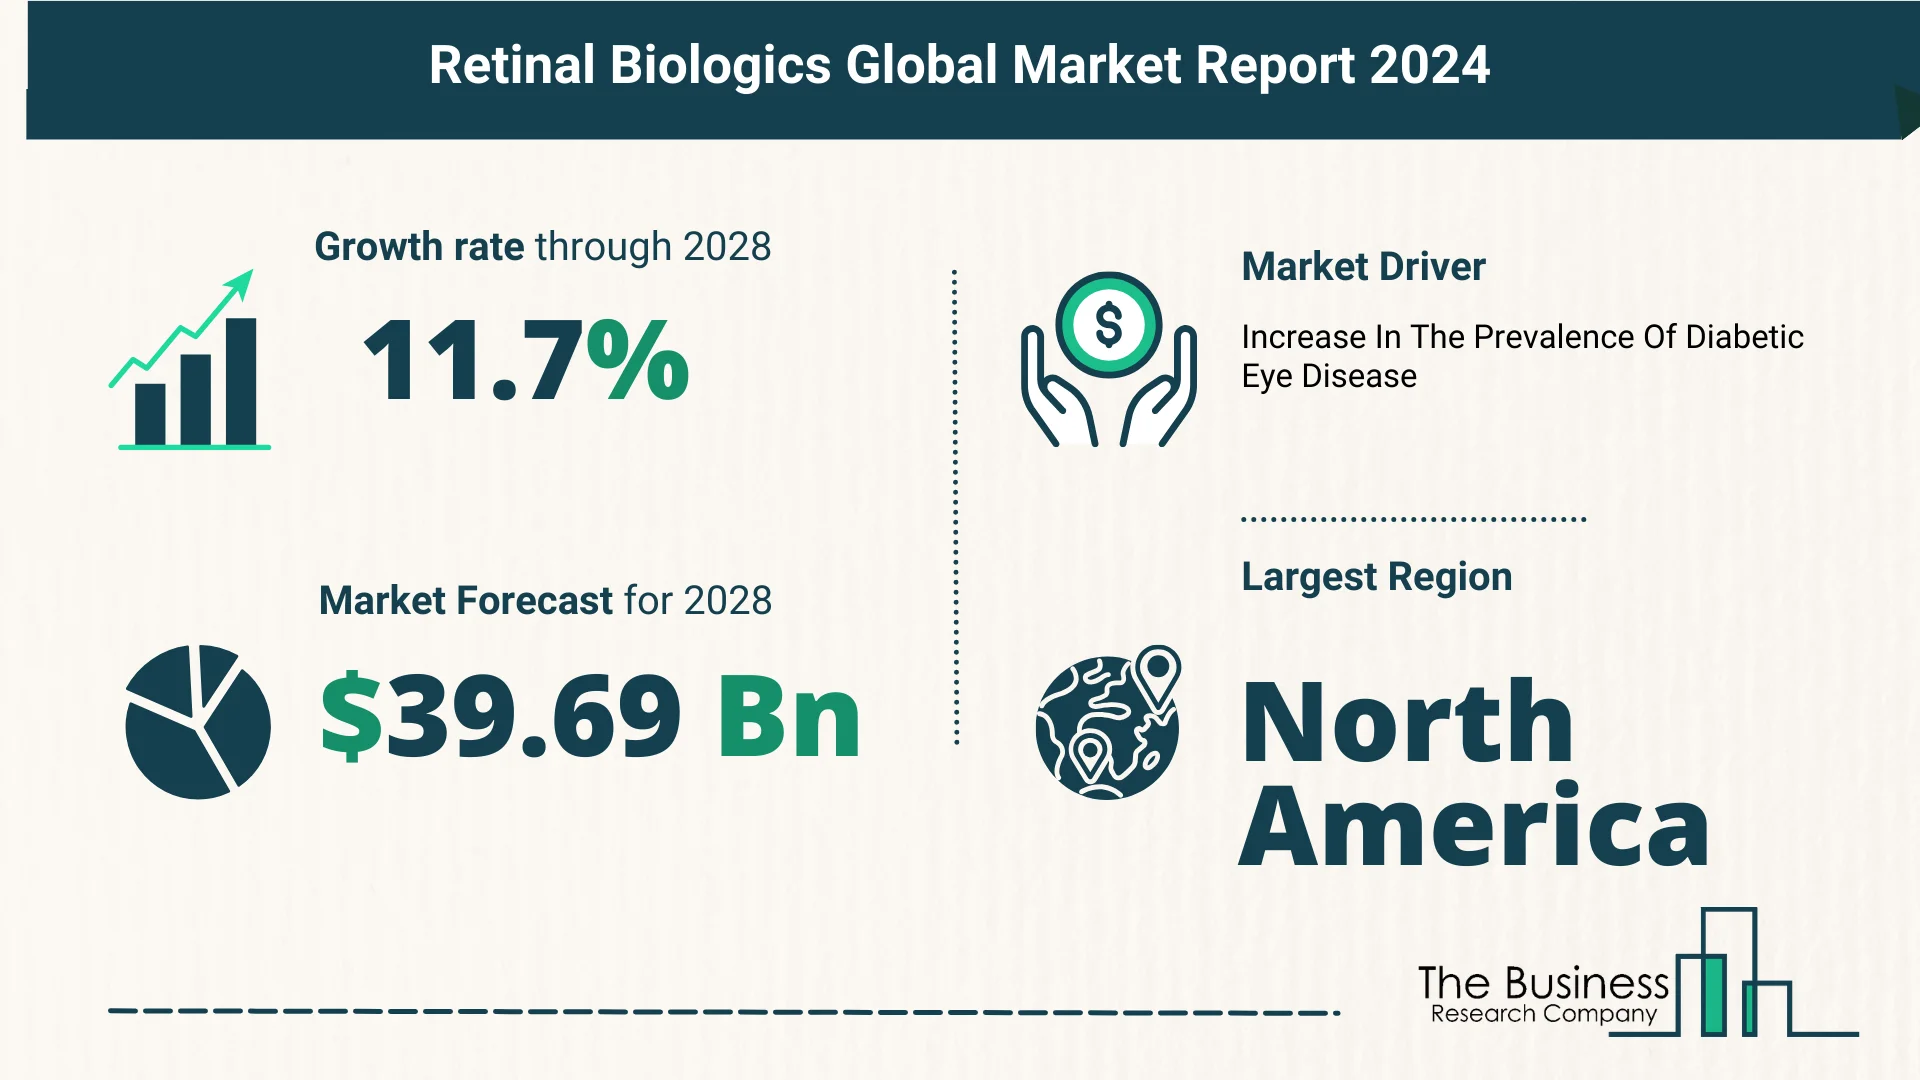 Global Retinal Biologics Market Size